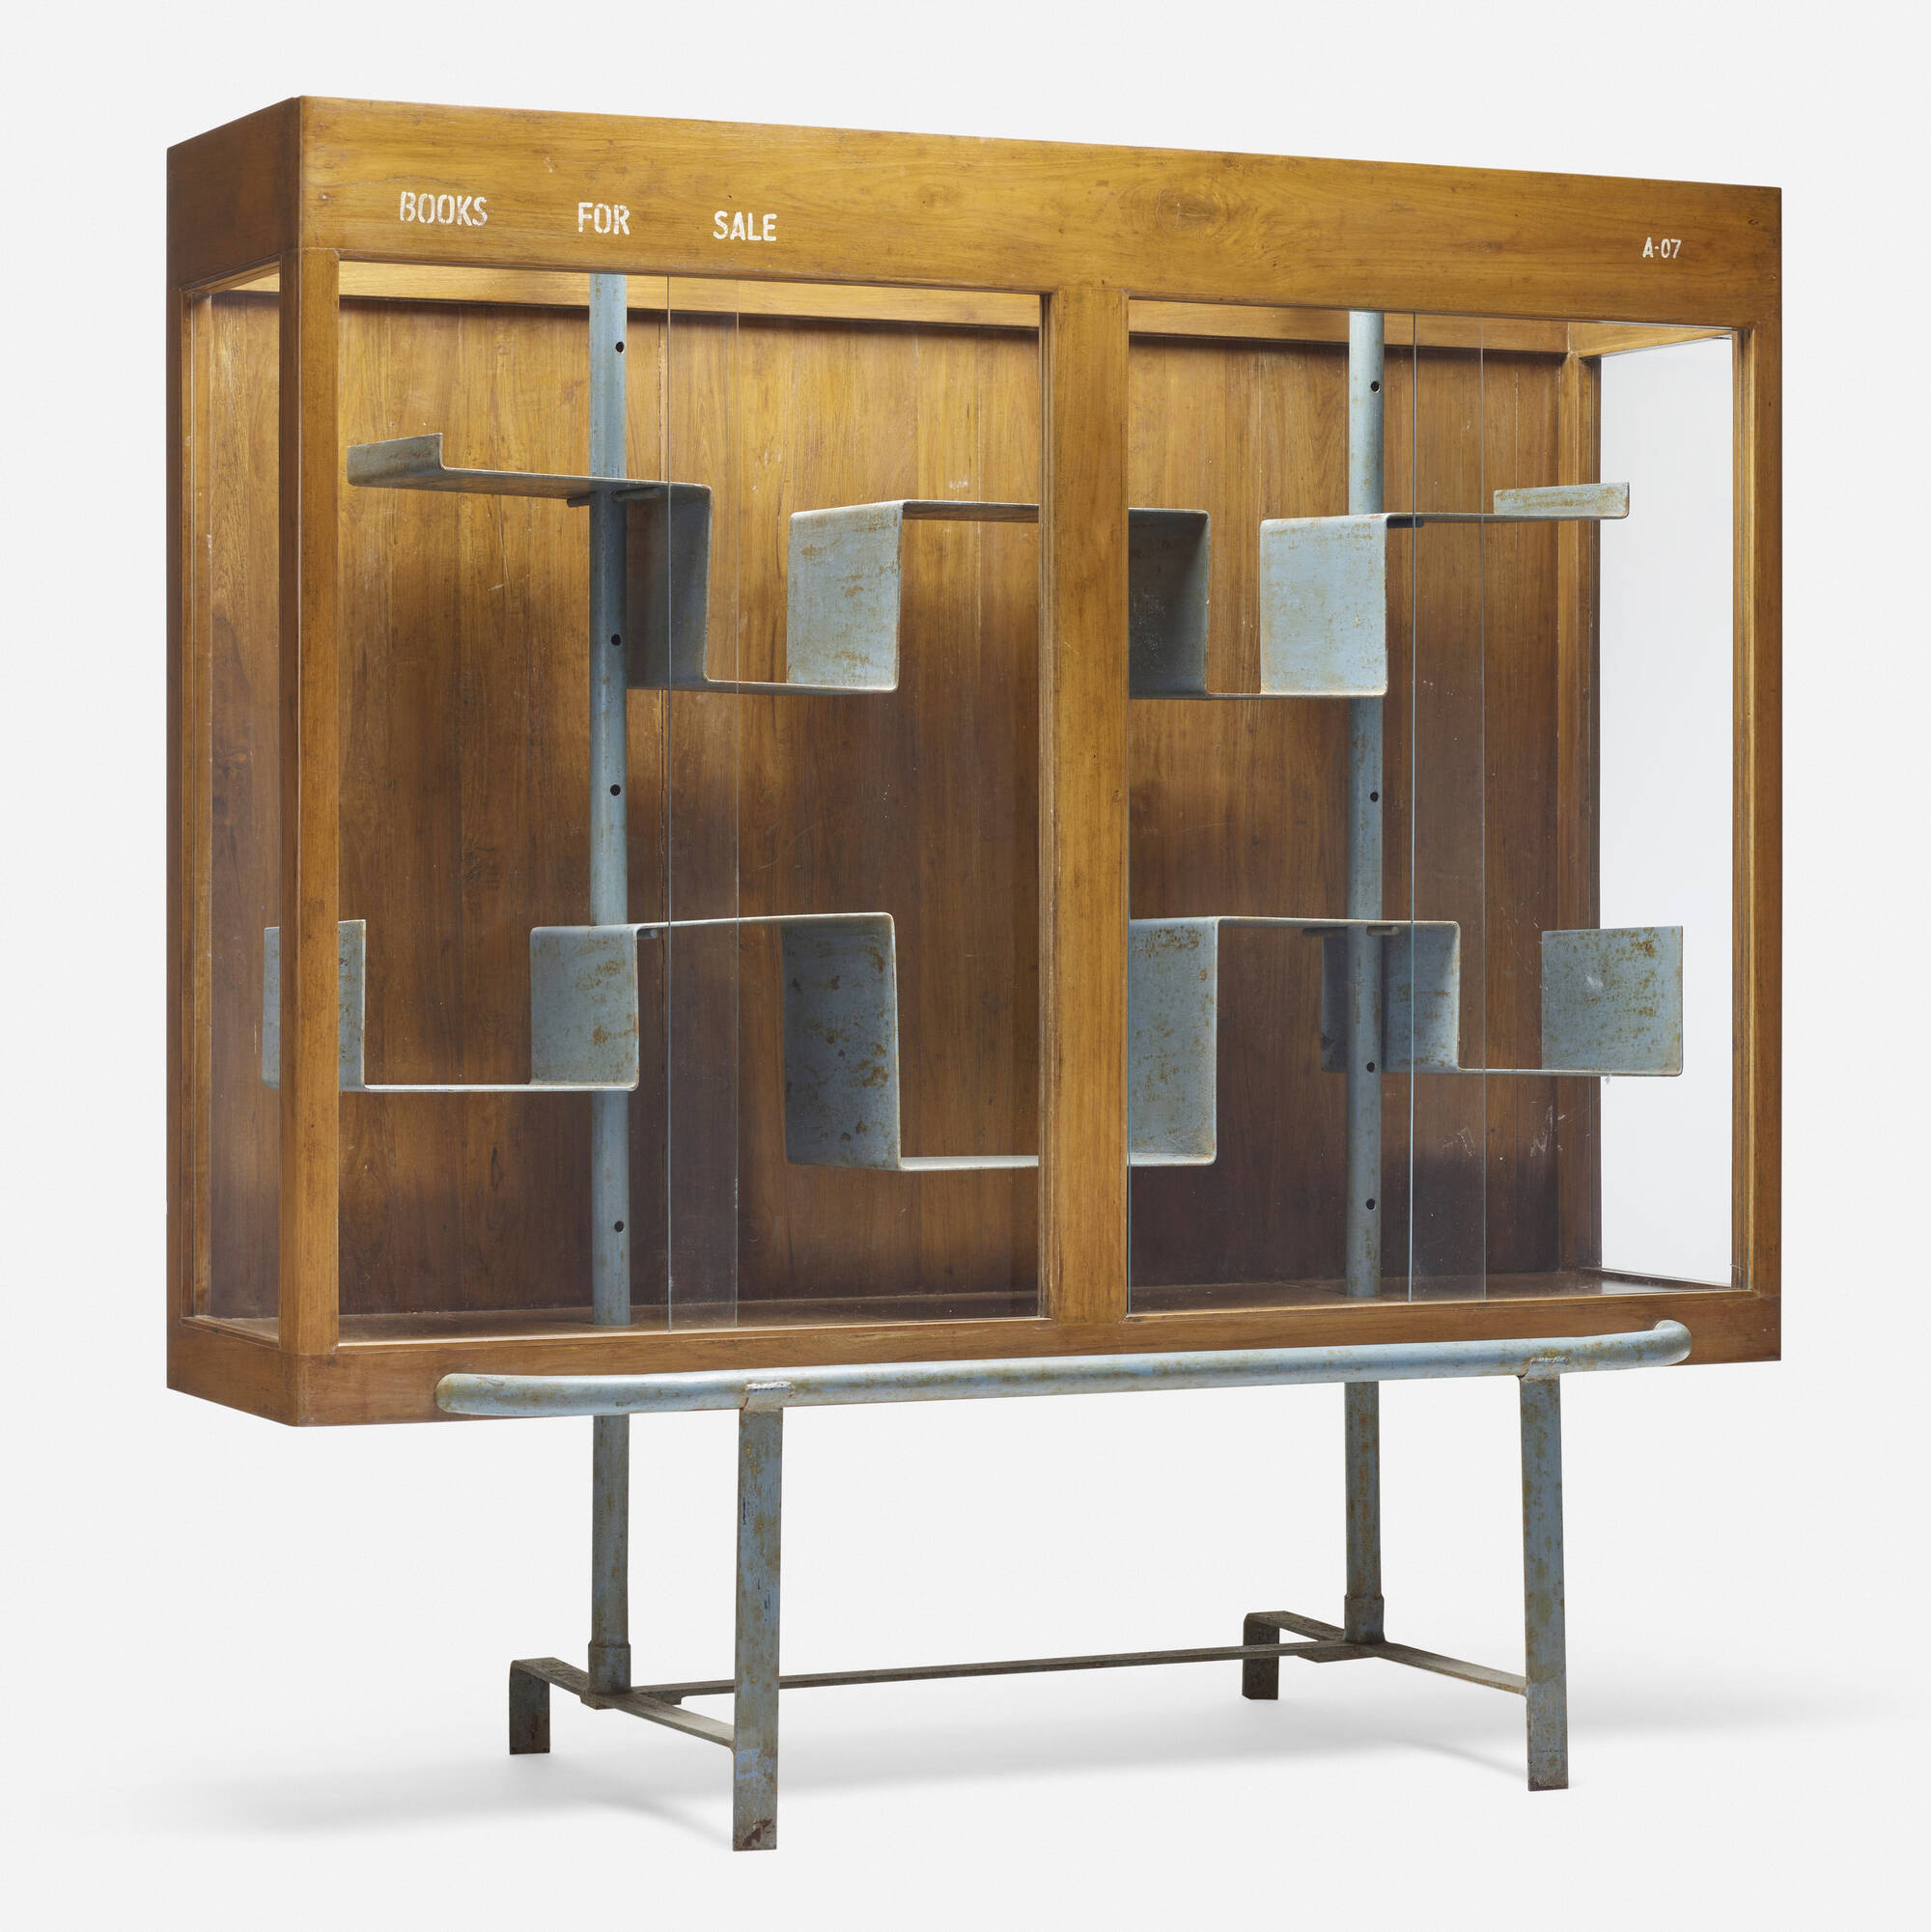 Sold at Auction: Pierre Jeanneret, LE CORBUSIER, PIERRE JEANNERET